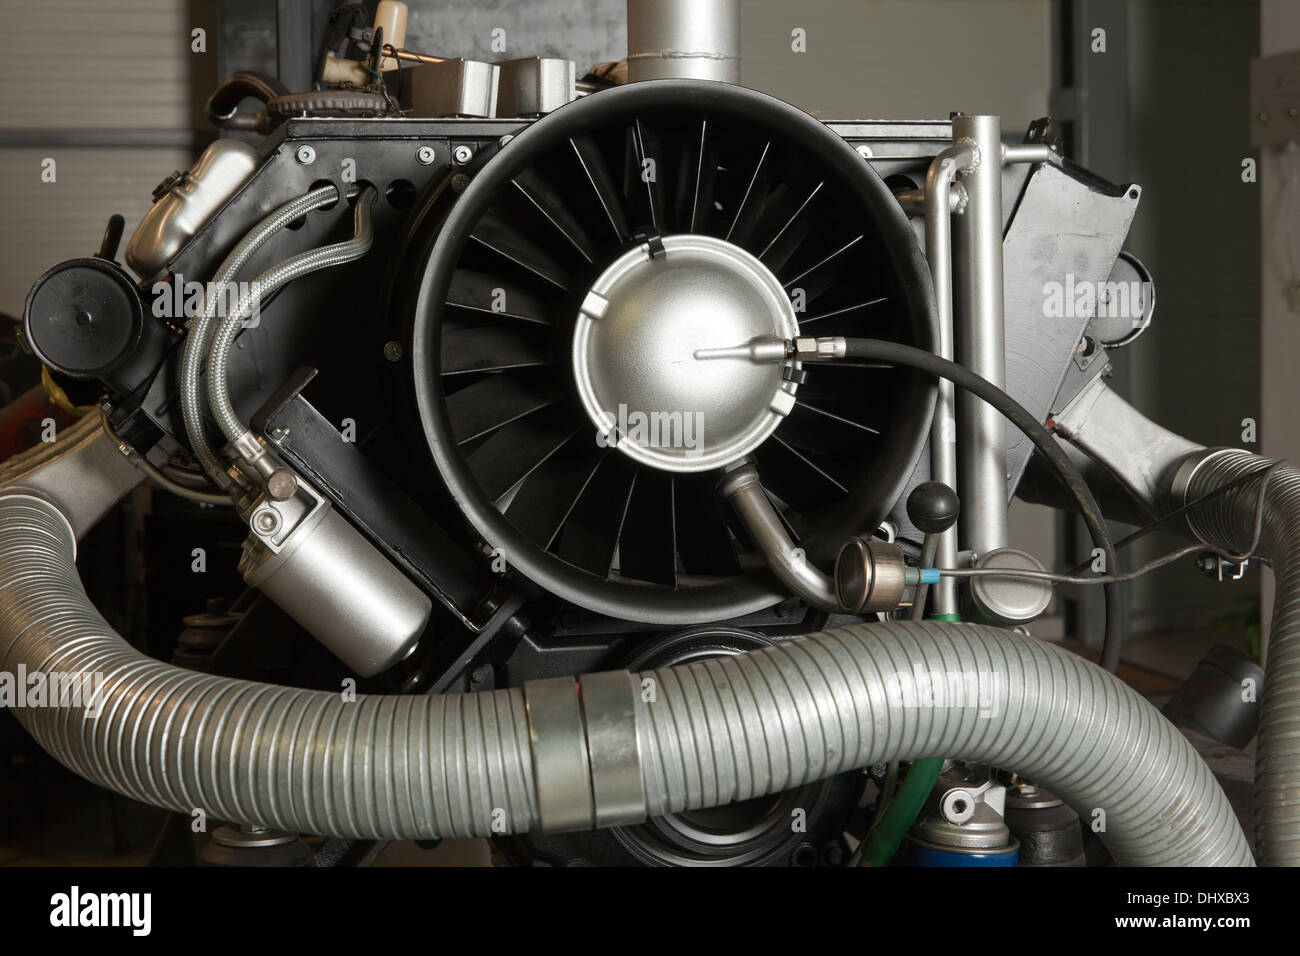 Immagine ravvicinata del motore turbo diesel Foto Stock